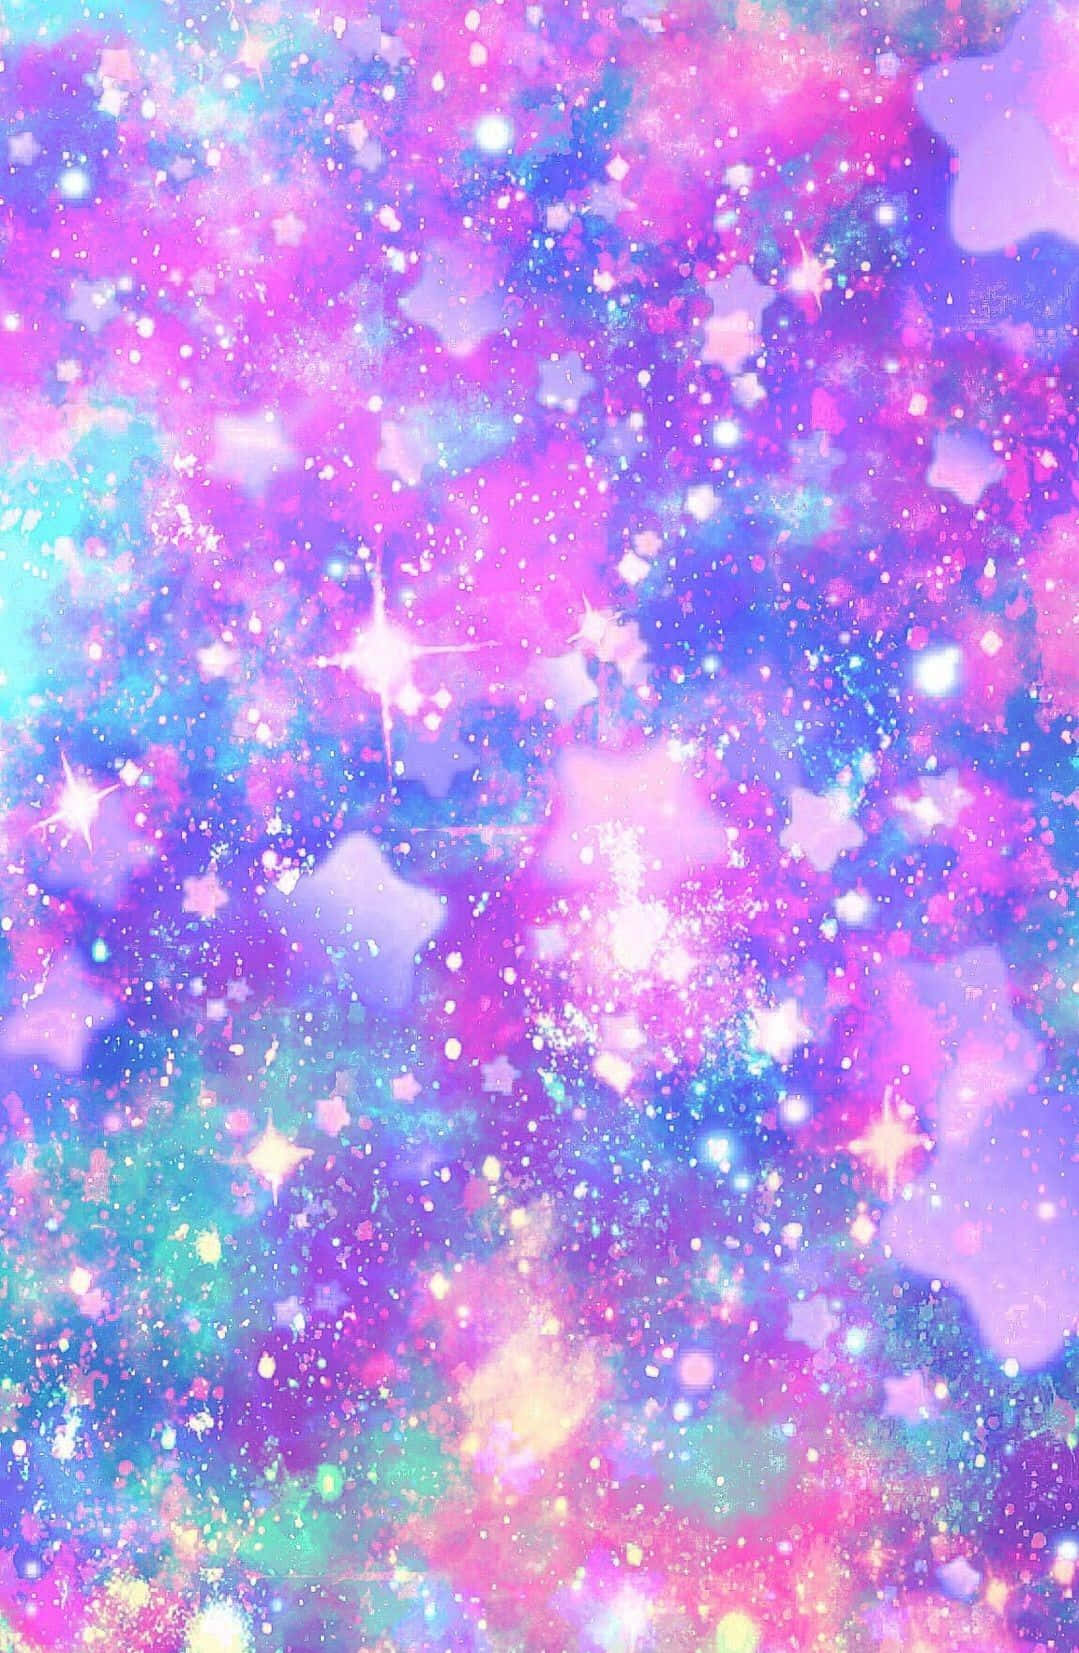 Einepink Und Lila Galaxie Mit Sternen Und Sternchen. Wallpaper